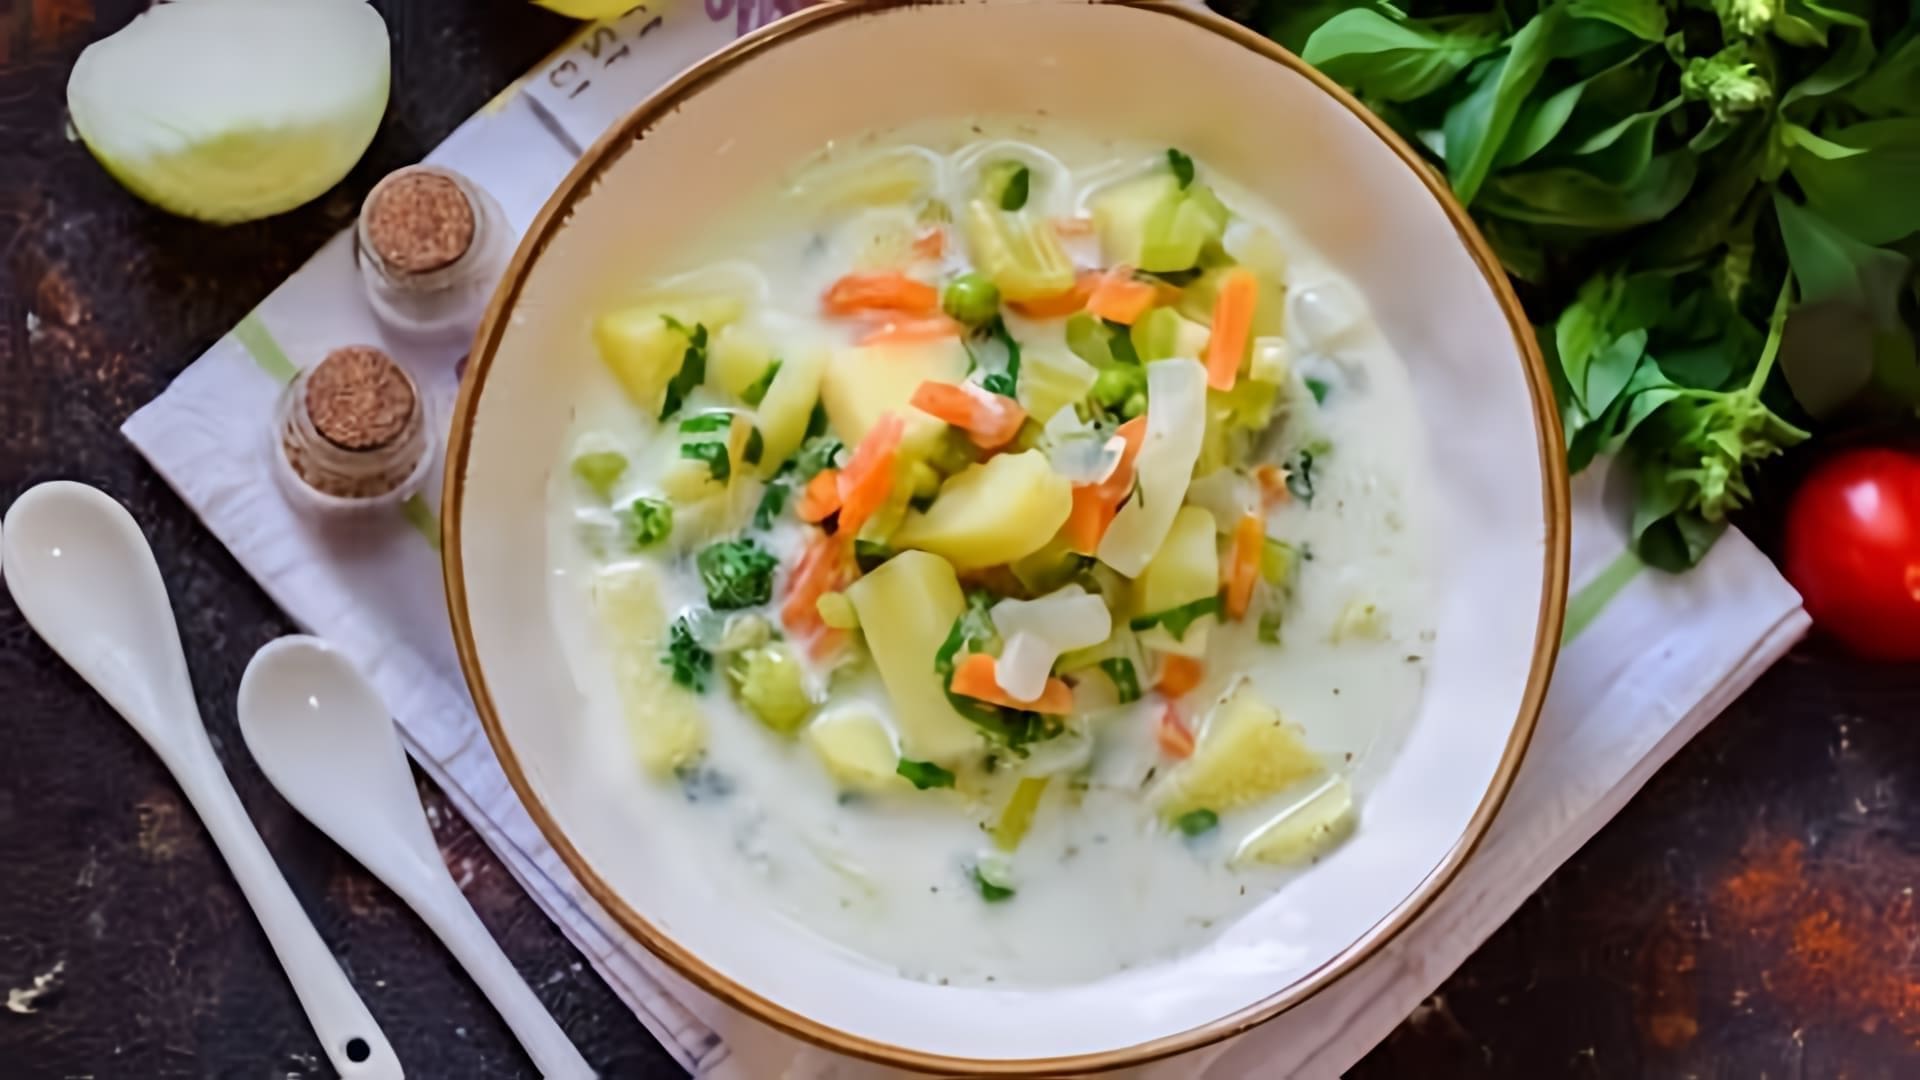 В этом видео демонстрируется рецепт приготовления сырного супа с сельдереем